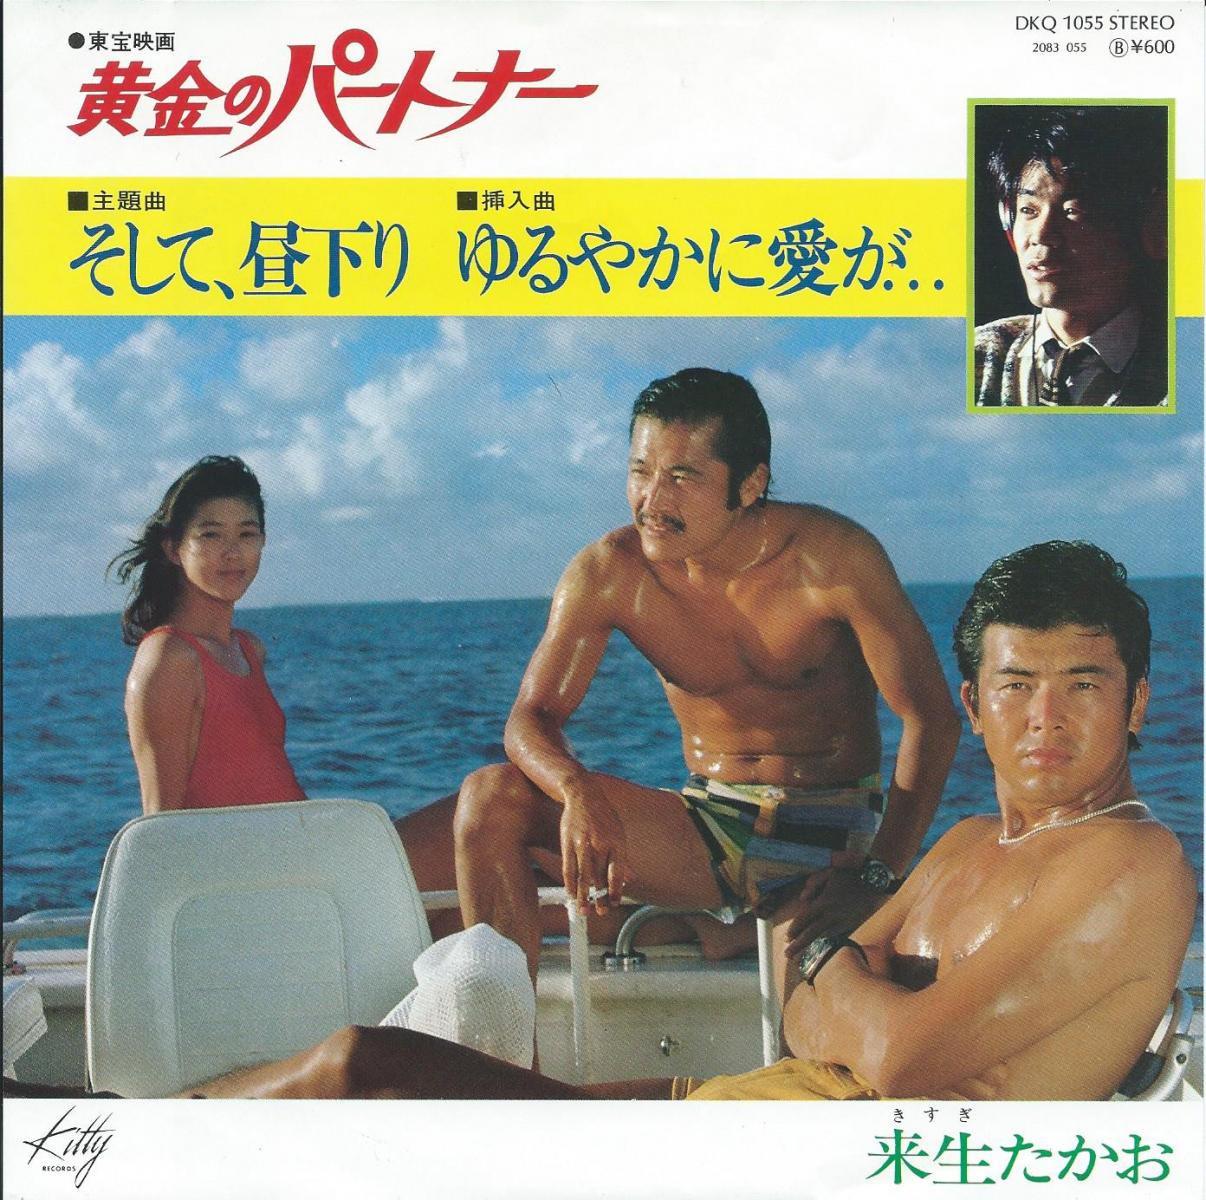 来生たかお TAKAO KISUGI / そして、昼下がり / ゆるやかに愛が... (東宝映画 黄金のパートナー 主題曲) (7) - HIP  TANK RECORDS